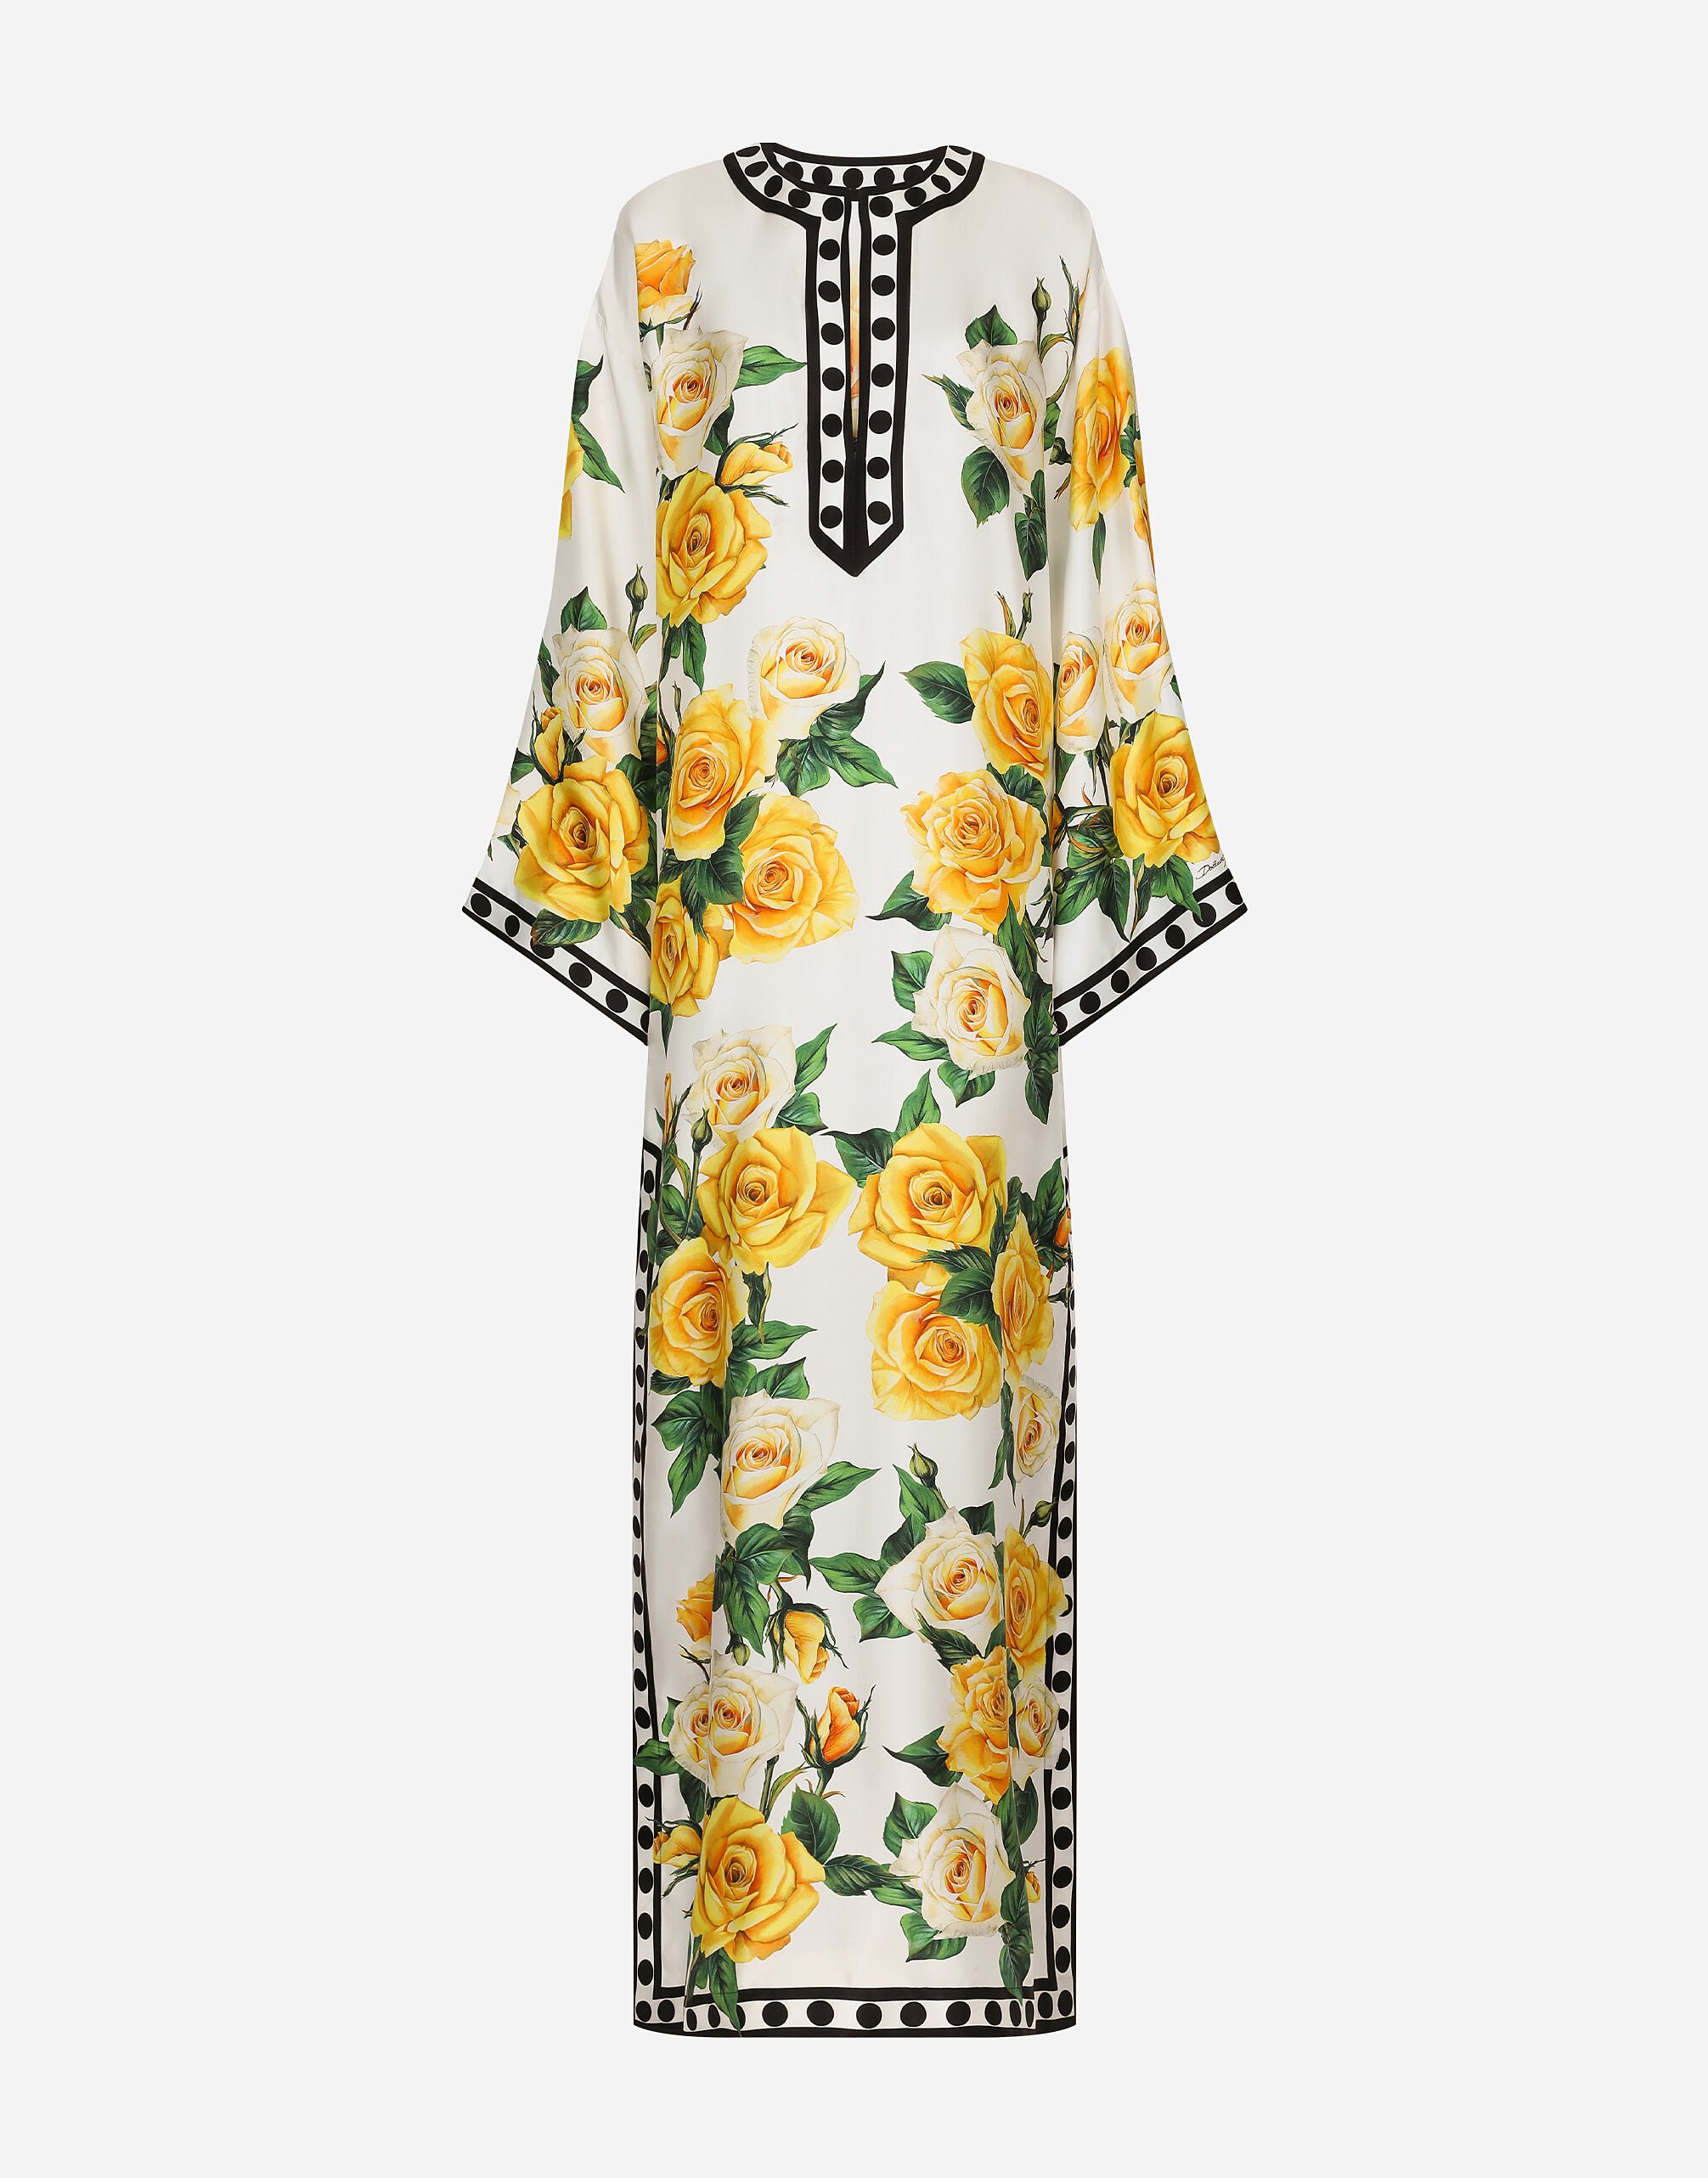 Dolce & Gabbana Lemon Crop Top and Skirt Set  Lemon print dress, Summer  dress outfits, New look clothes